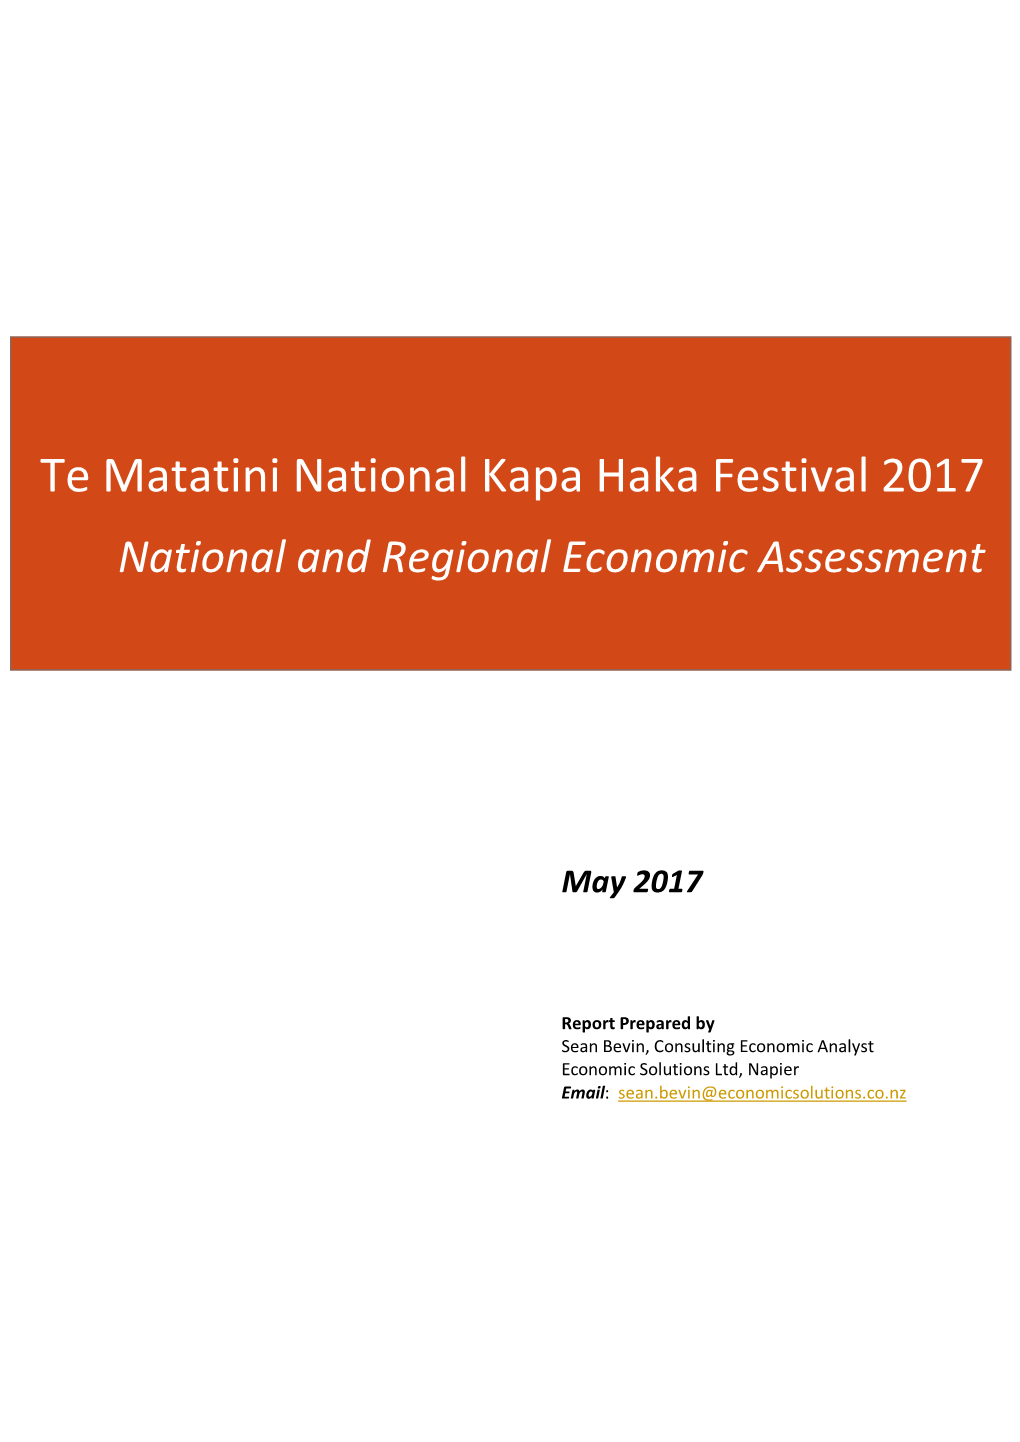 Te Matatini National Kapa Haka Festival 2017